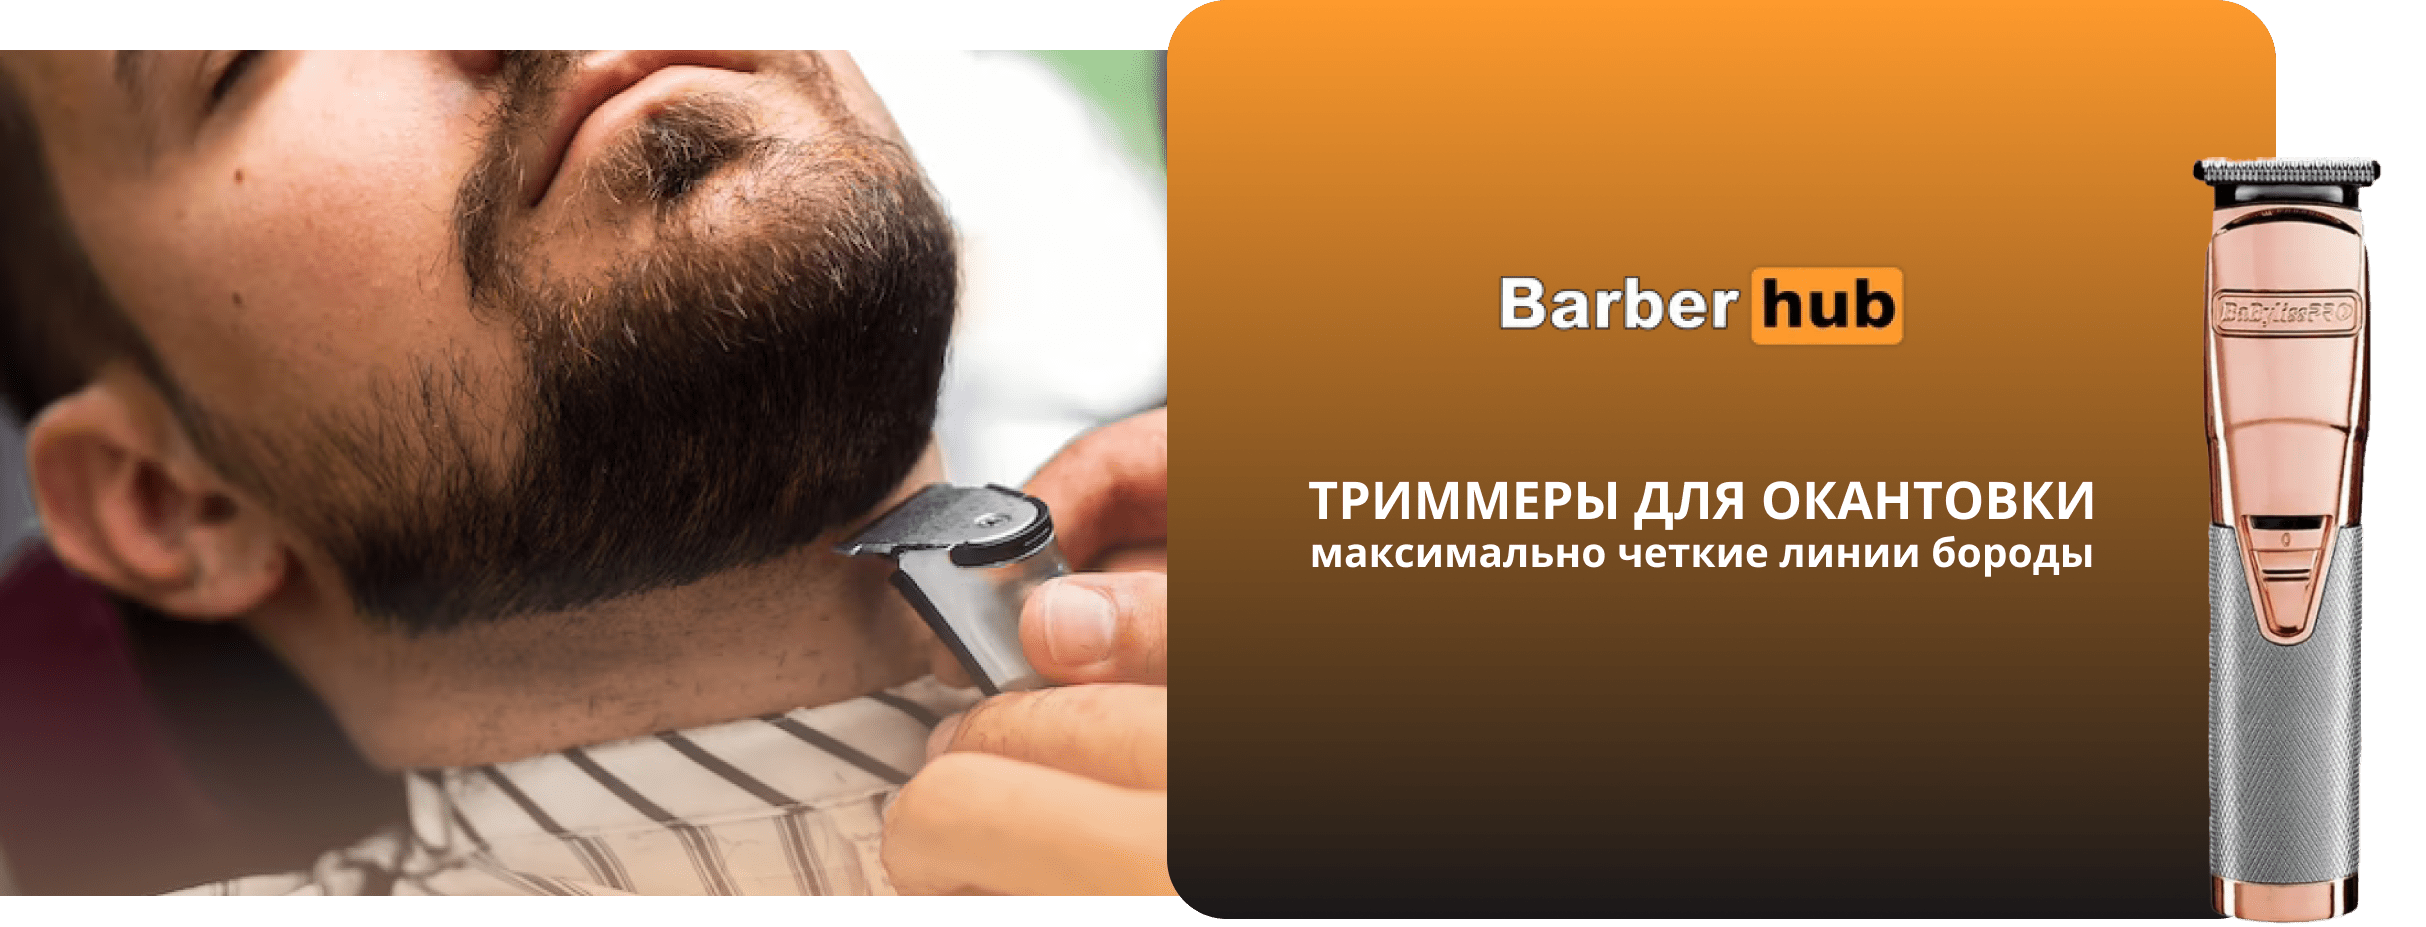 Профессиональный триммер для бороды - как с его помощью сделать окантовку